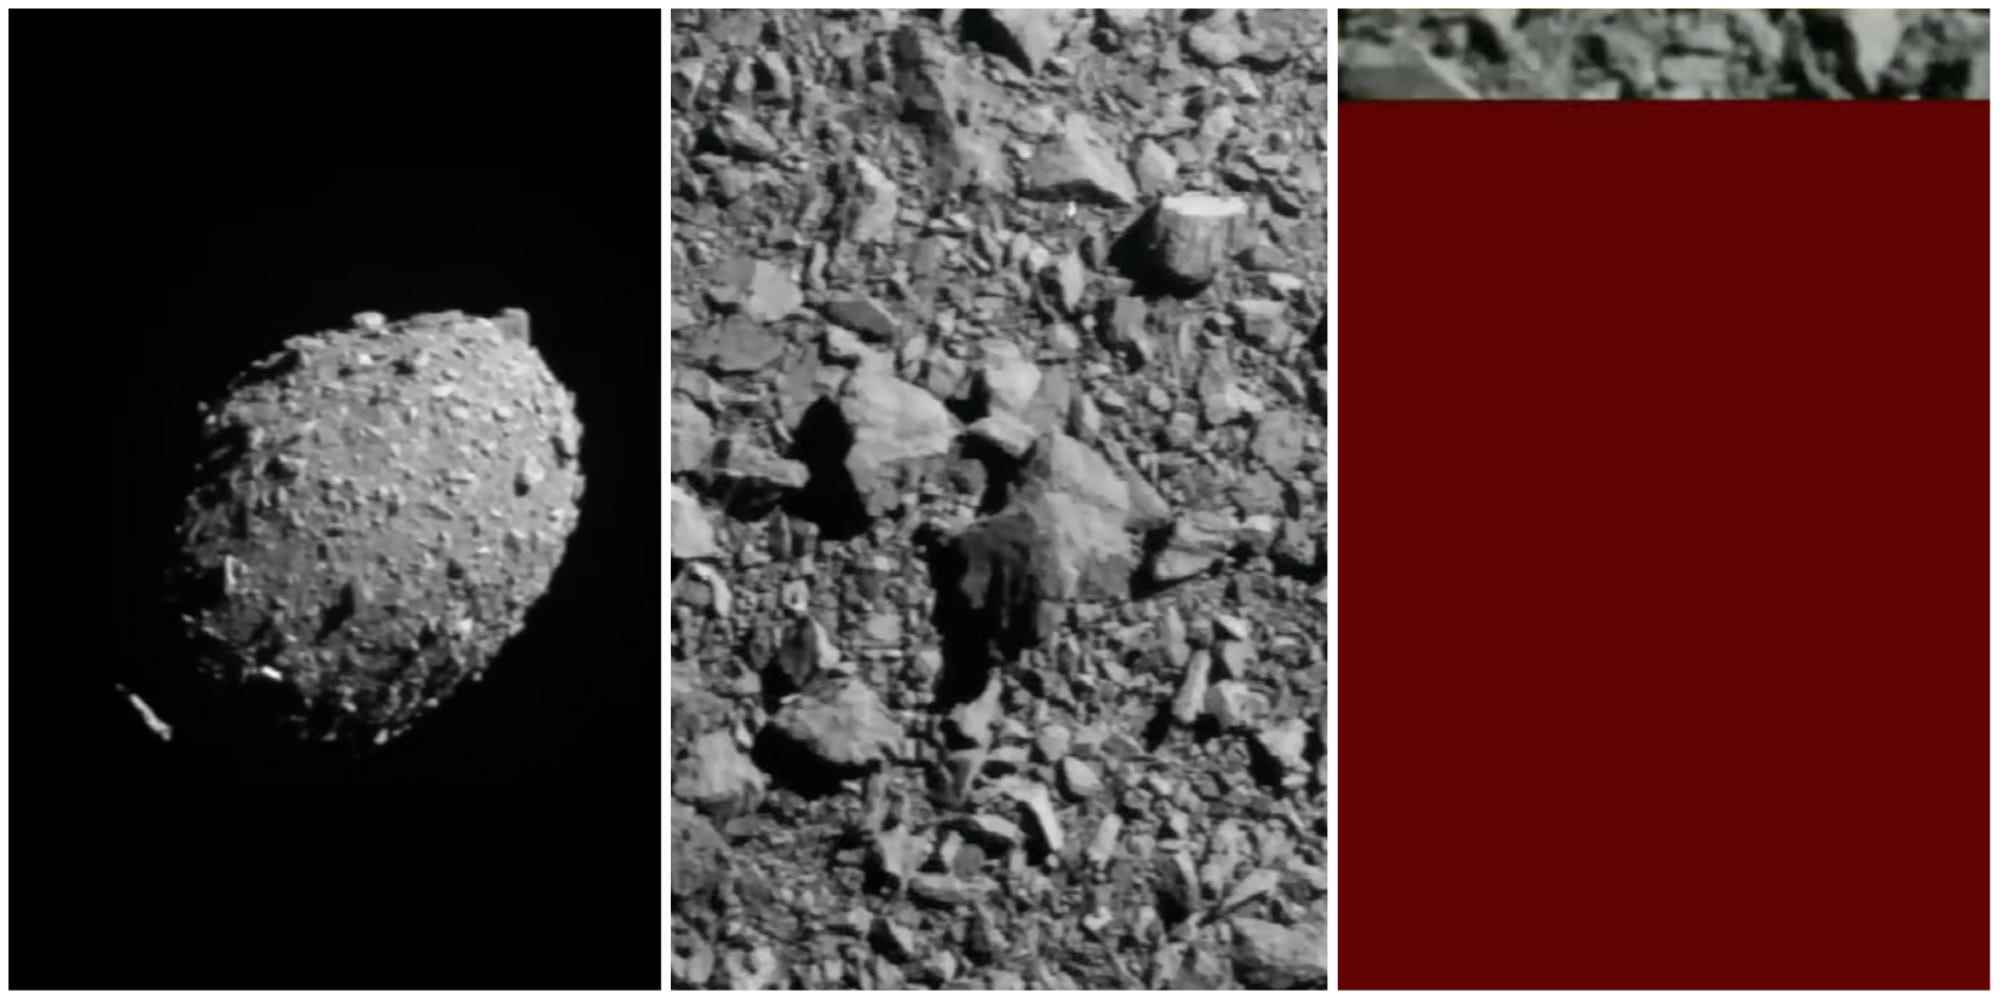 Bildfolge, die einen Asteroiden aus der Ferne zeigt, dann Nahaufnahme, dann Videoausschnitt